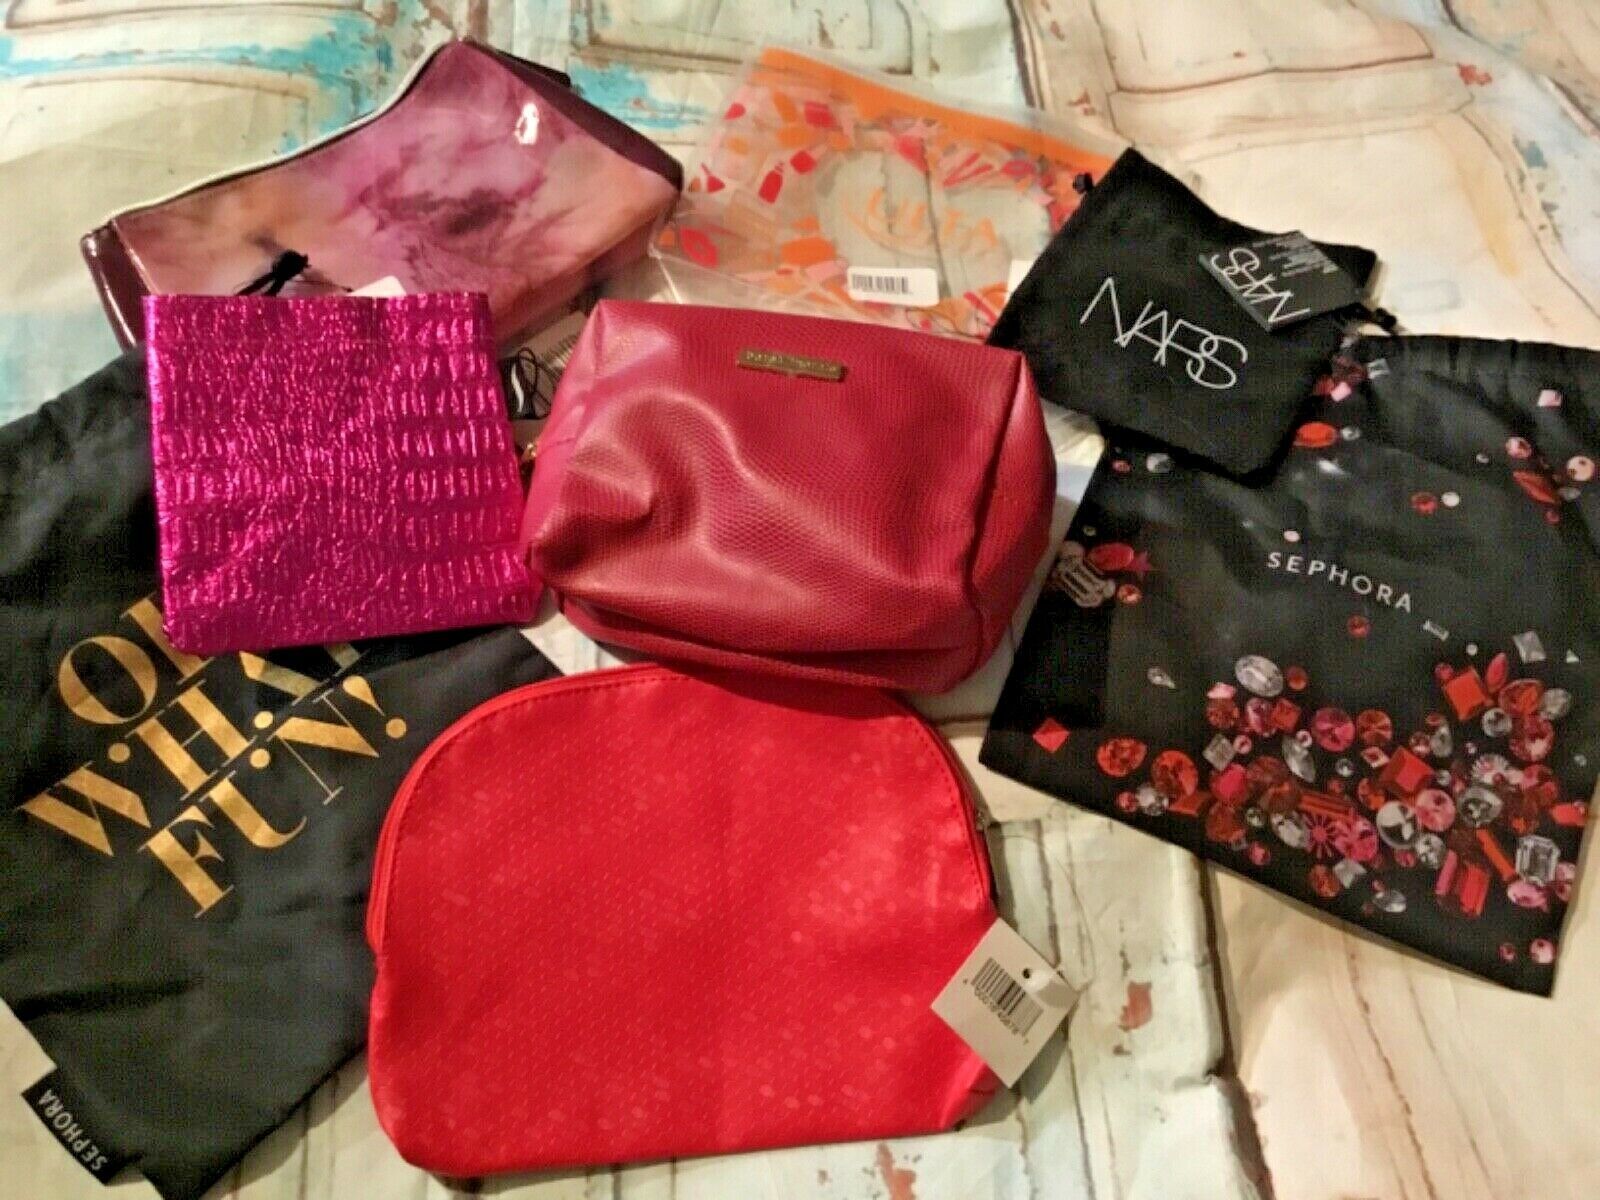 Ulta Sephora bare minerals makeup cosmetic bag lot of 8 new - $8.59